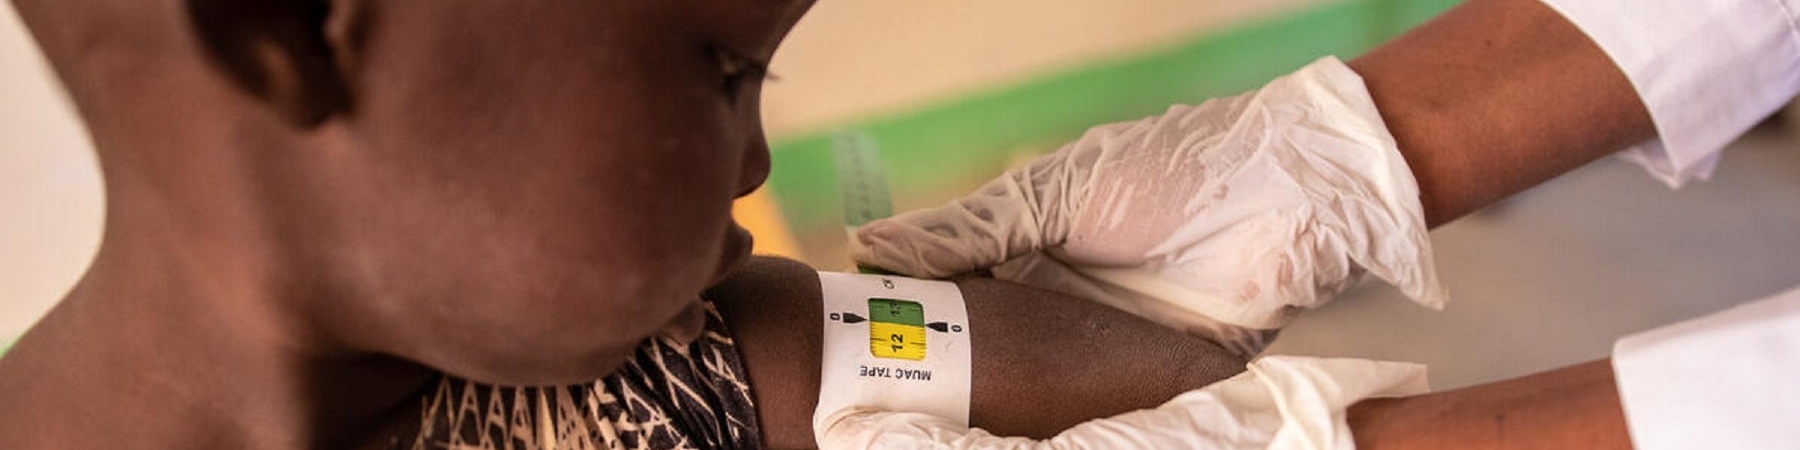 bambino malnutrito e medico che mette attorno al braccio il braccialetto MUAC per misurare il suo stato di malnutrizione